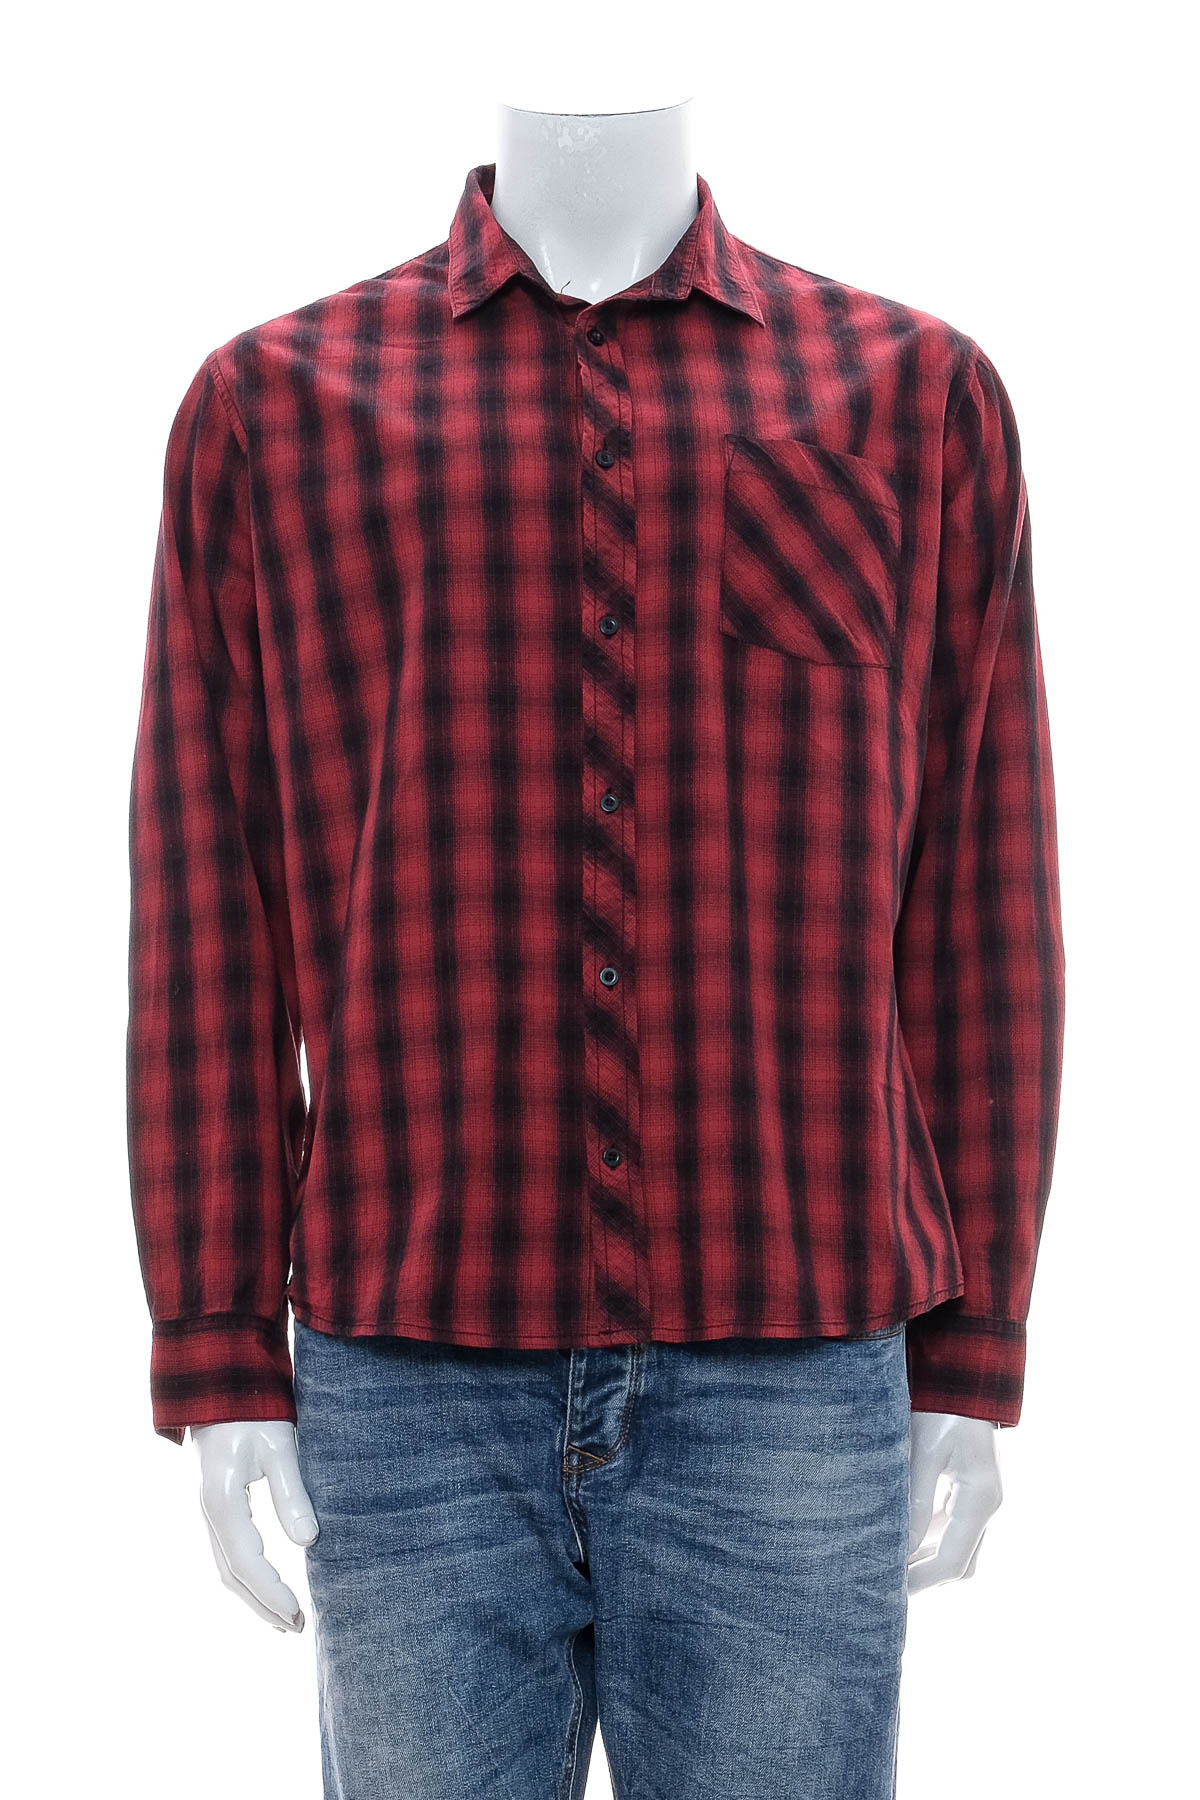 Ανδρικό πουκάμισο - Terranova - 0